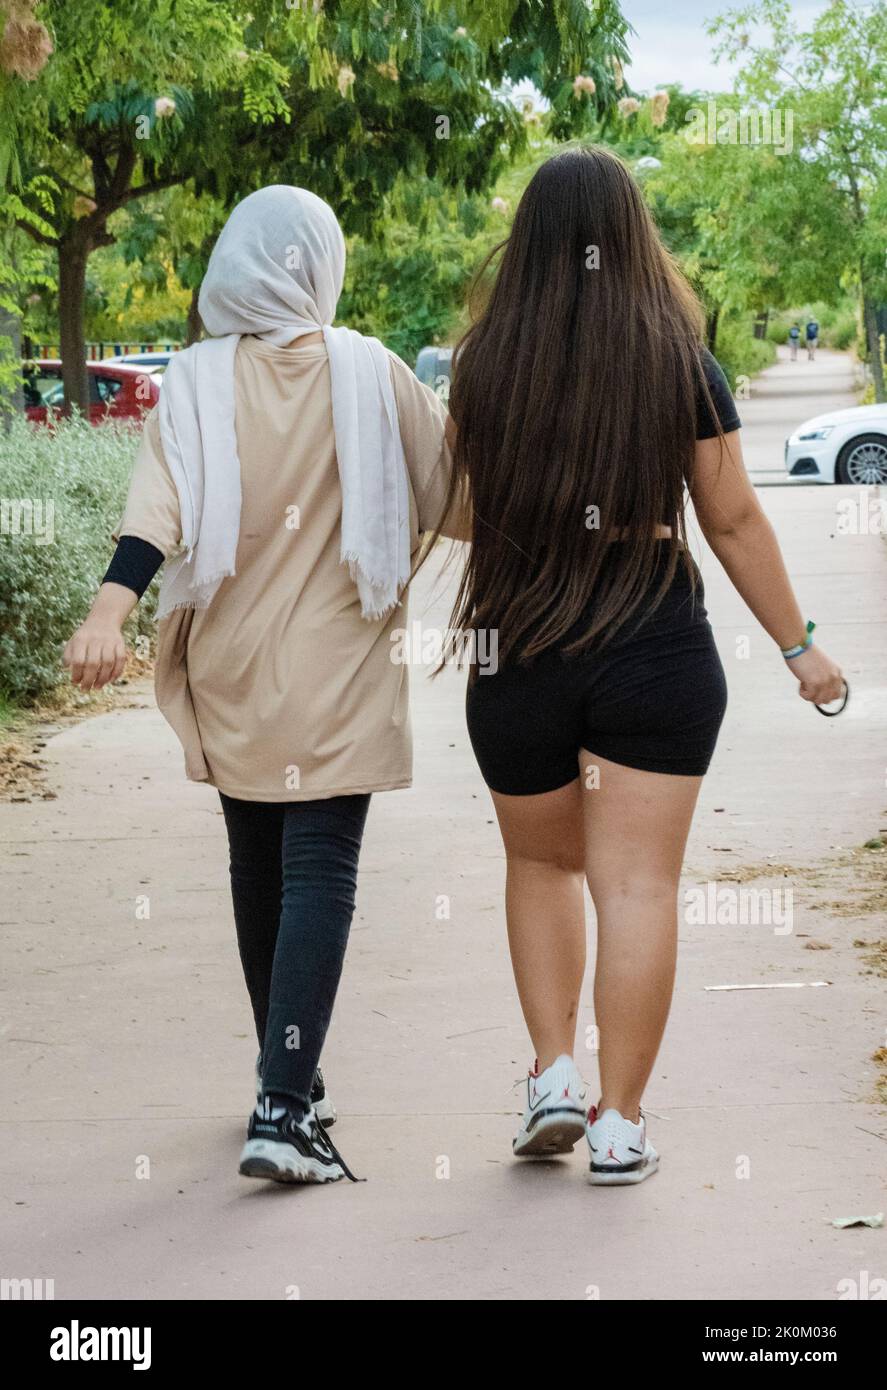 Arabische und europäische Teenager-Mädchen gehen und genießen Zeit zusammen in einem Park. Multikulturelles Konzept. Stockfoto